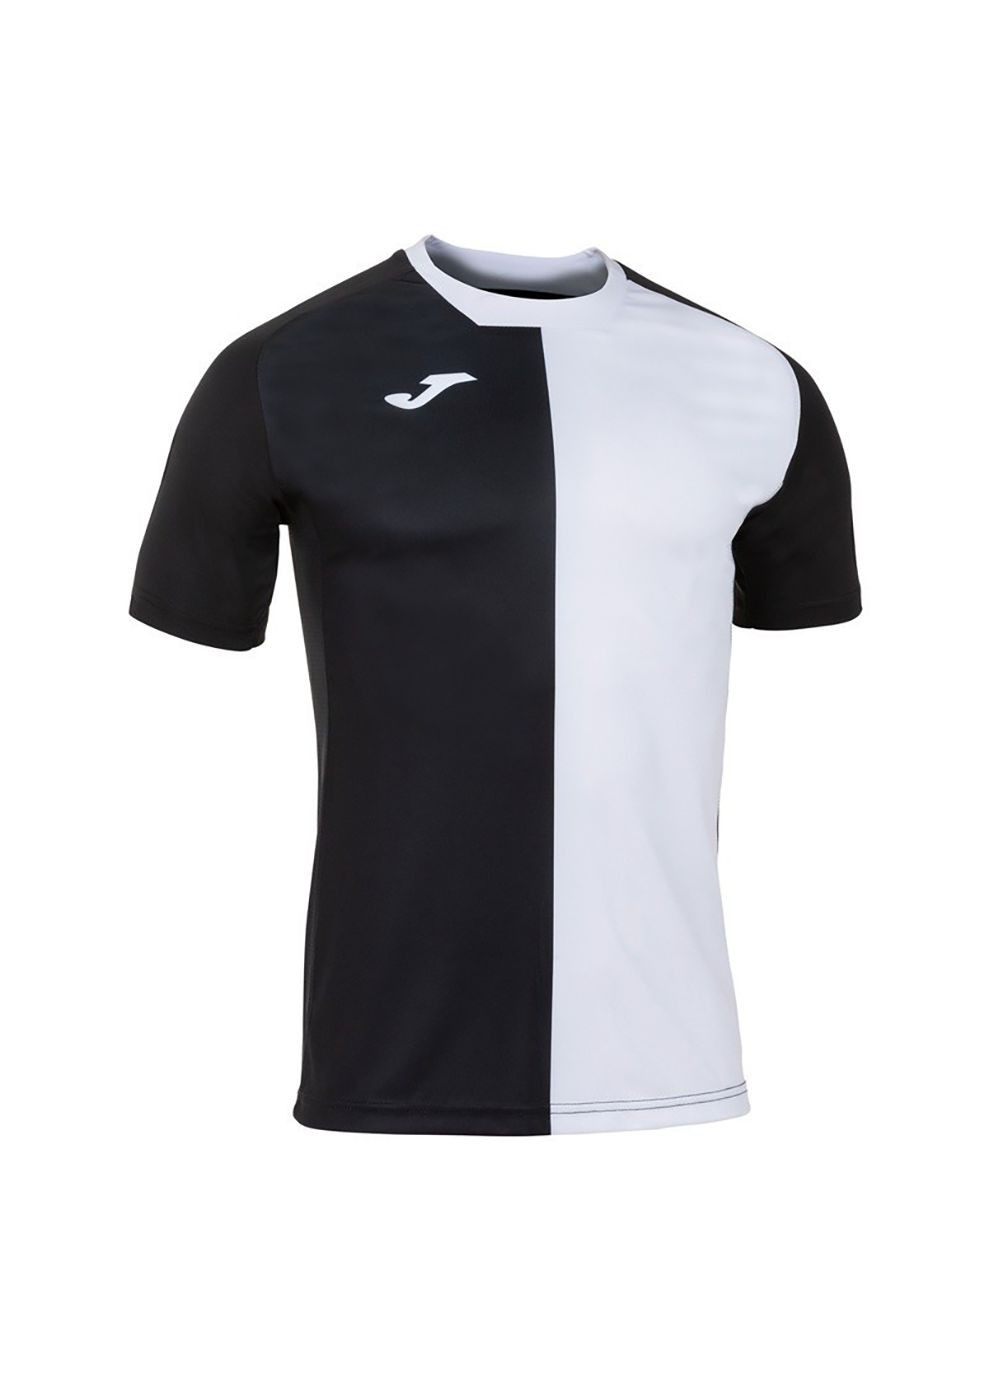 Комбинированная футболка city t-shirt black-white s/s черный,белый 101546.102 Joma